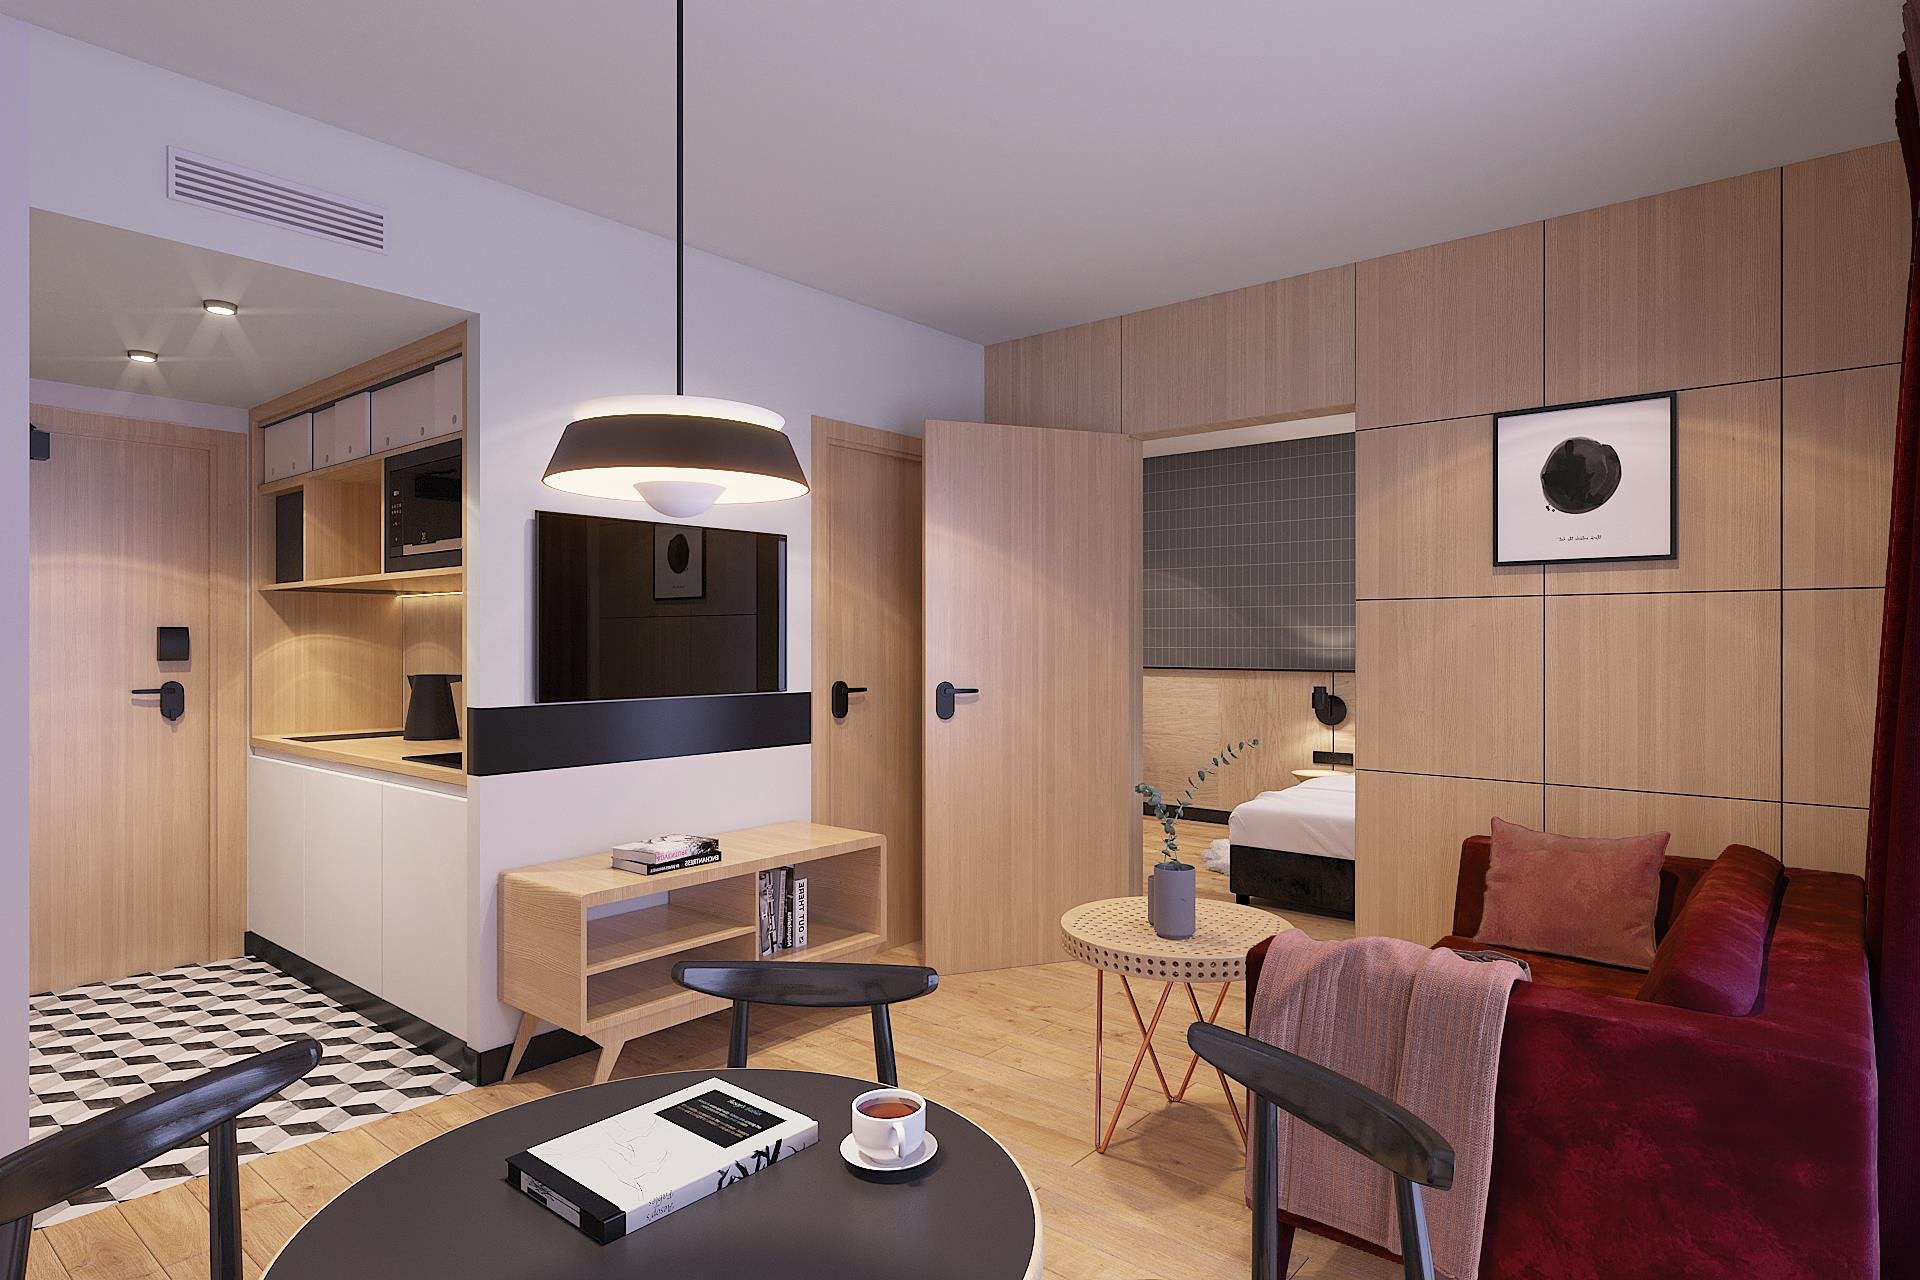 Tulip Residences Widok 3D dwupokojowego mieszkania z telewizorem w pokoju dziennym i aneksem kuchennym